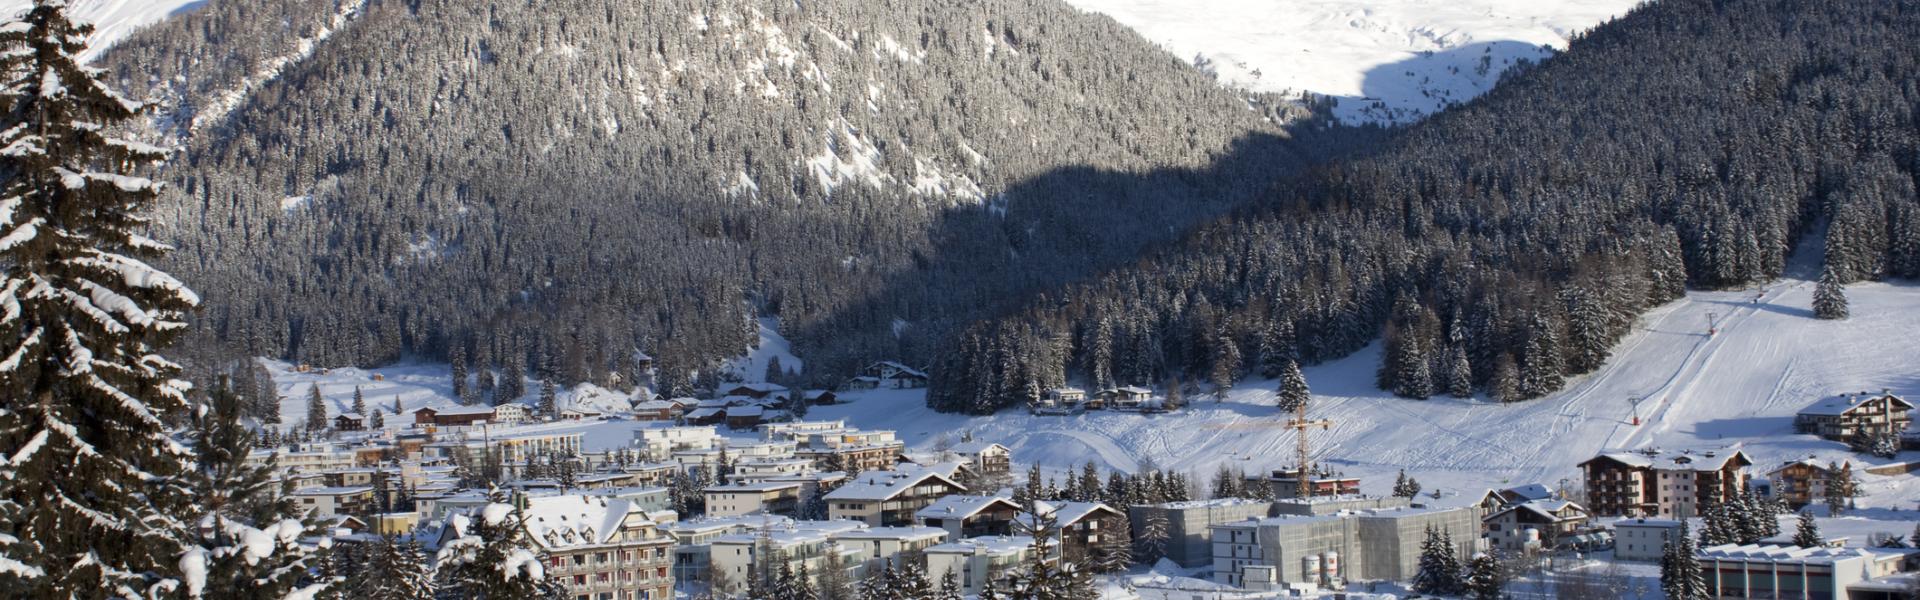 Aluguel de temporada, chalés e pousadas em Davos - LarDeFérias